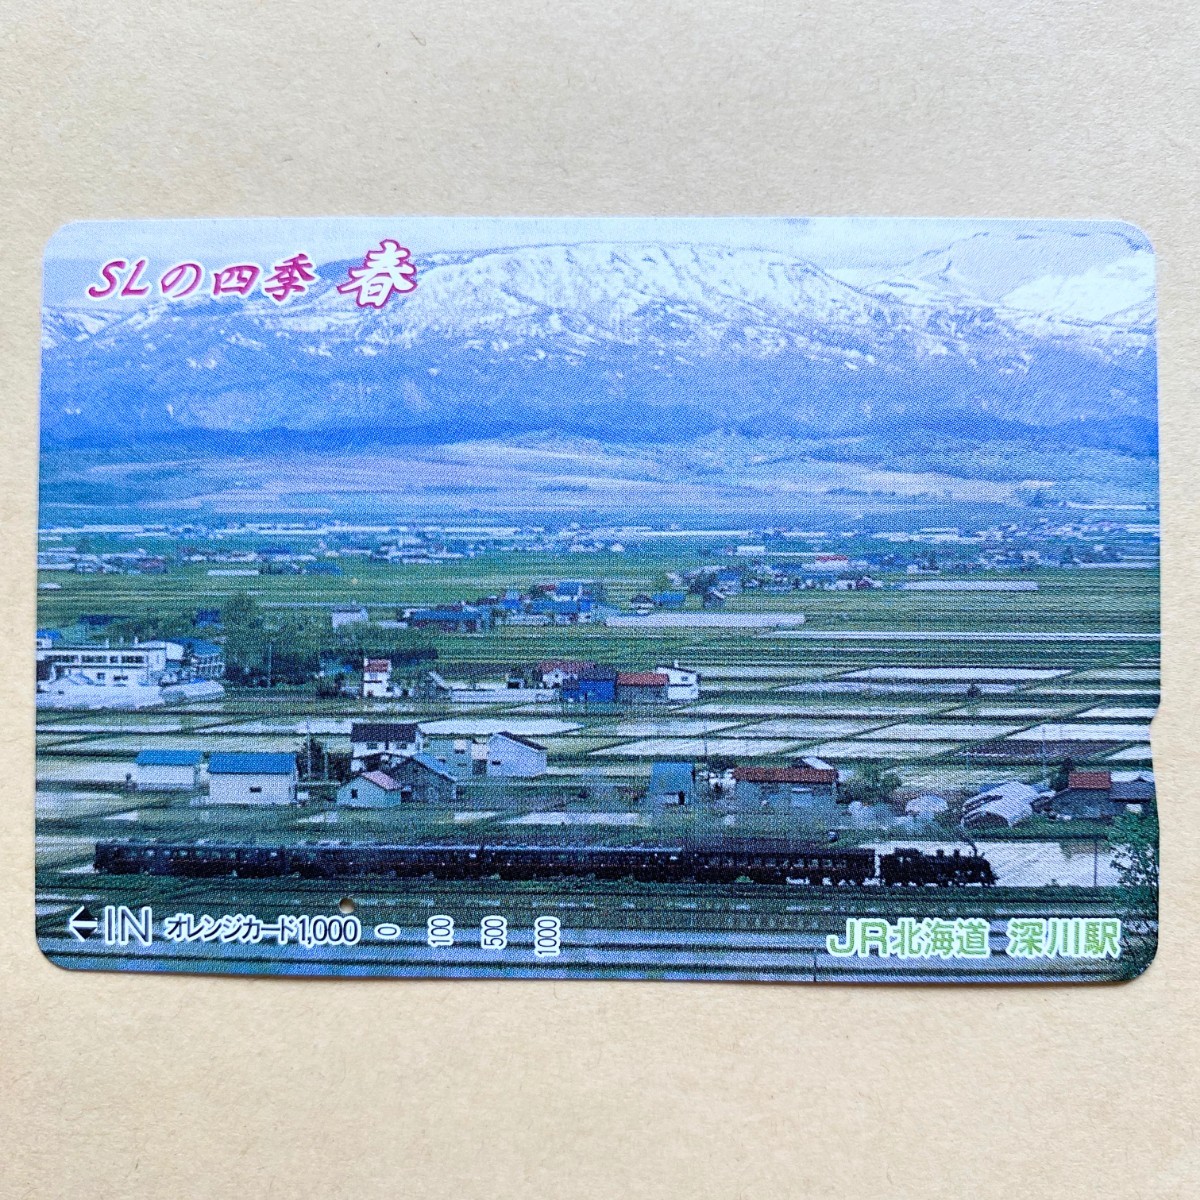 【使用済】 オレンジカード JR北海道 SLの四季 春_画像1